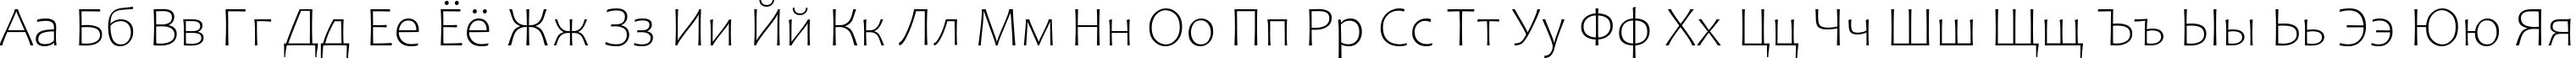 Пример написания русского алфавита шрифтом Candara Light